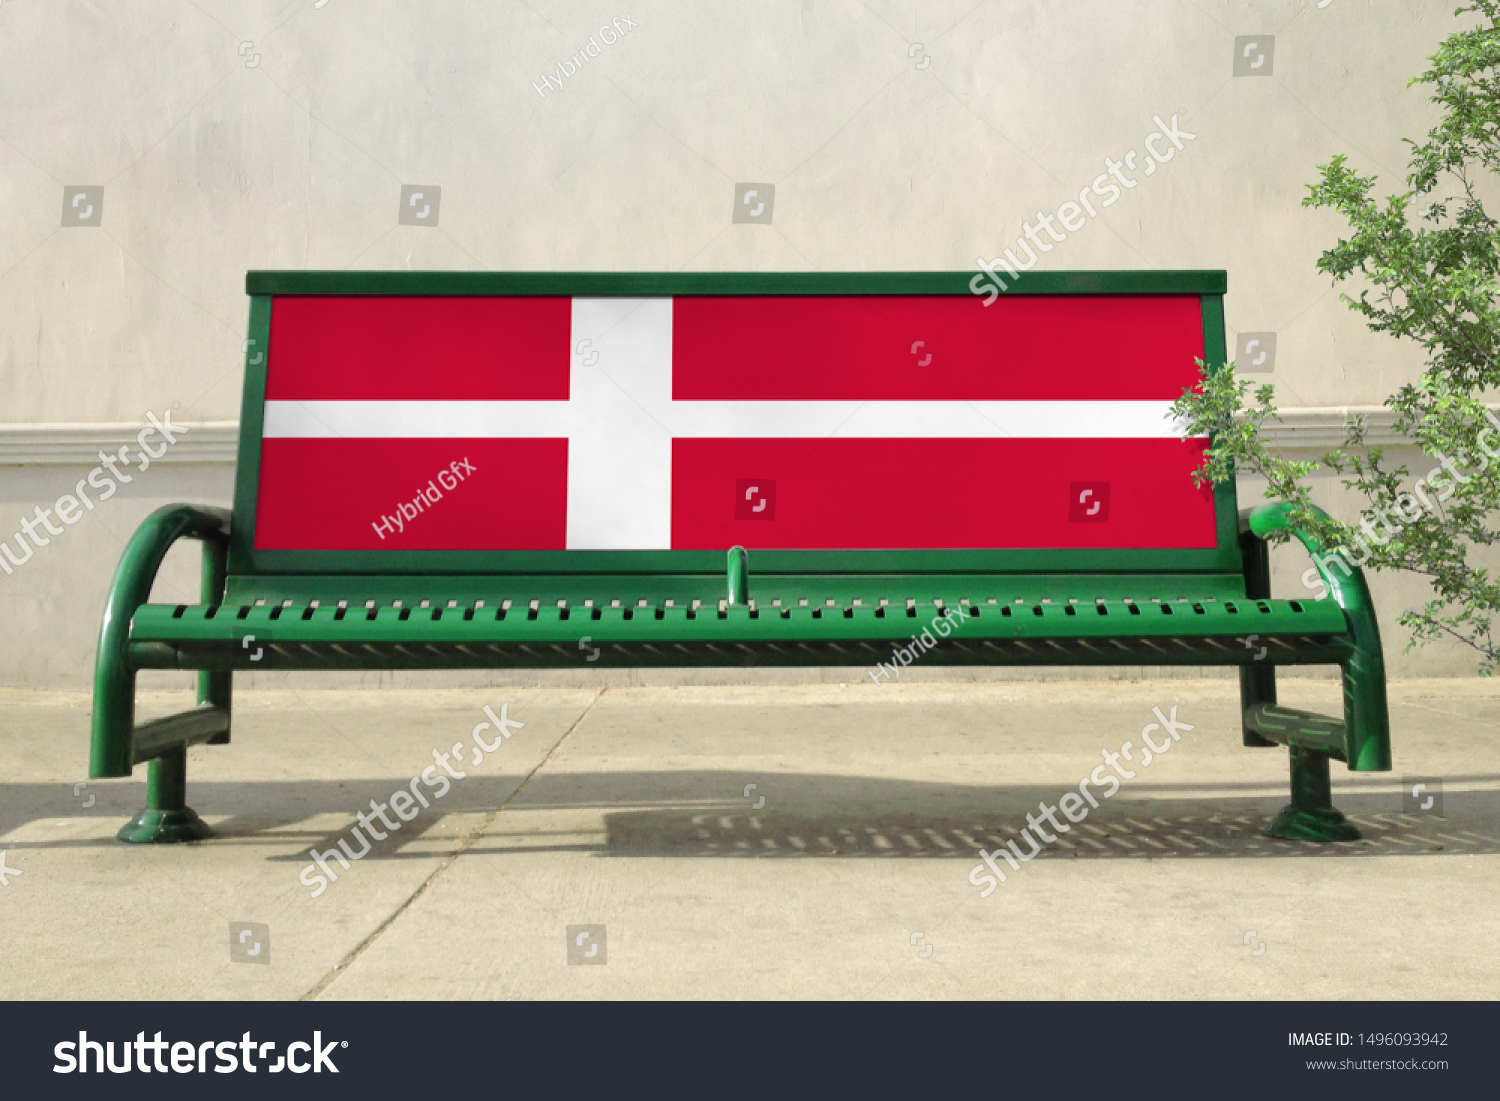 Flag of Denmark on bench. Denmark Flag on bench advertisement #1496093942